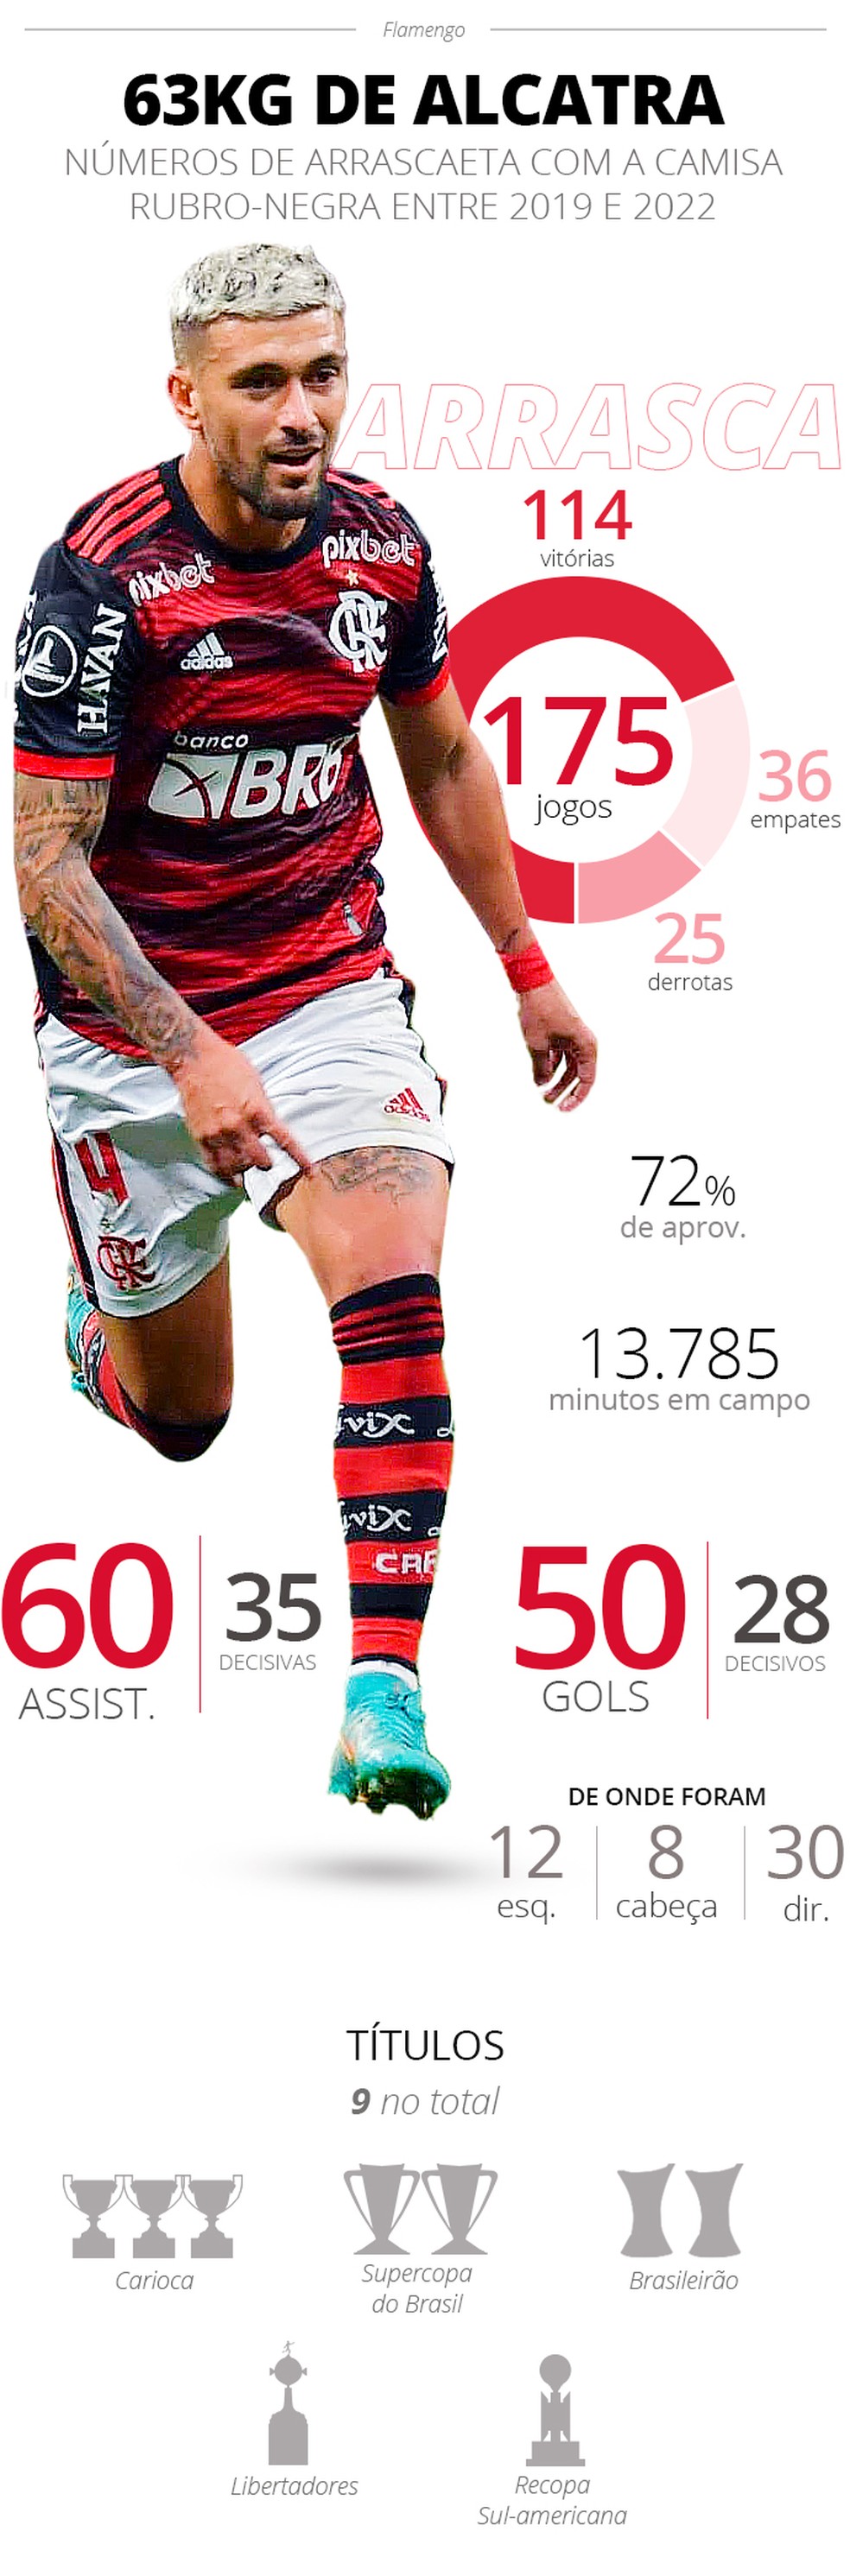 Arrascaeta e seus números com a camisa do Flamengo — Foto: ge